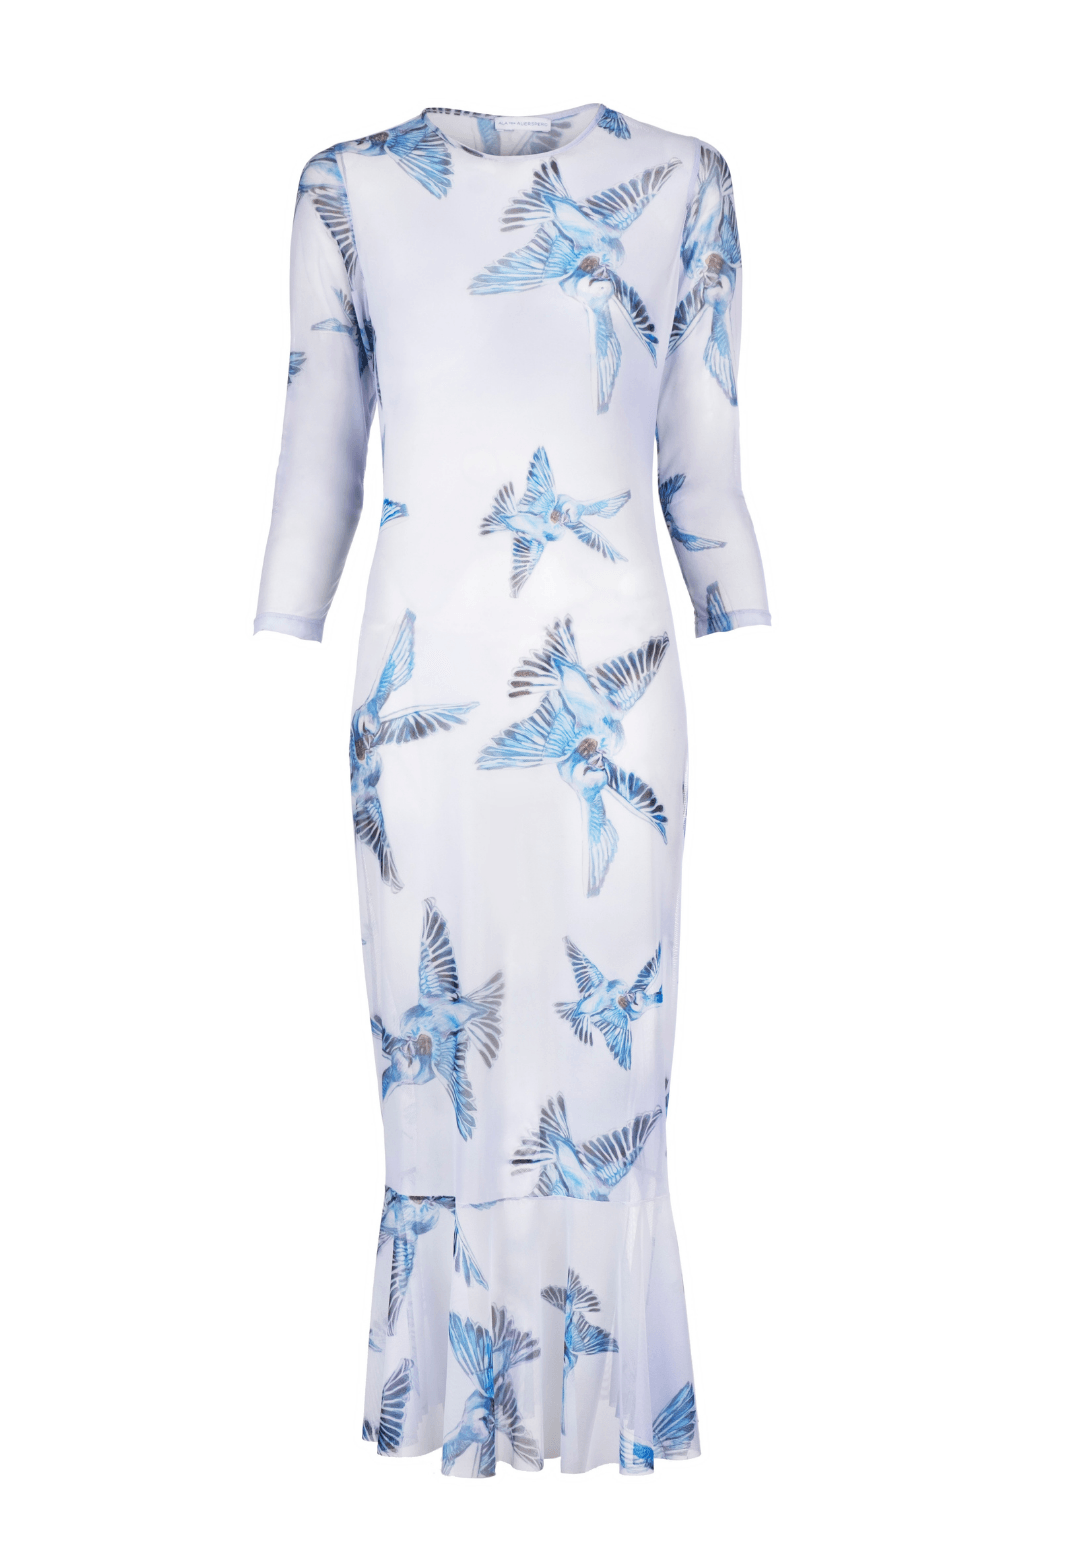 Three quarter knee length mesh lavender dress with blue birds printed